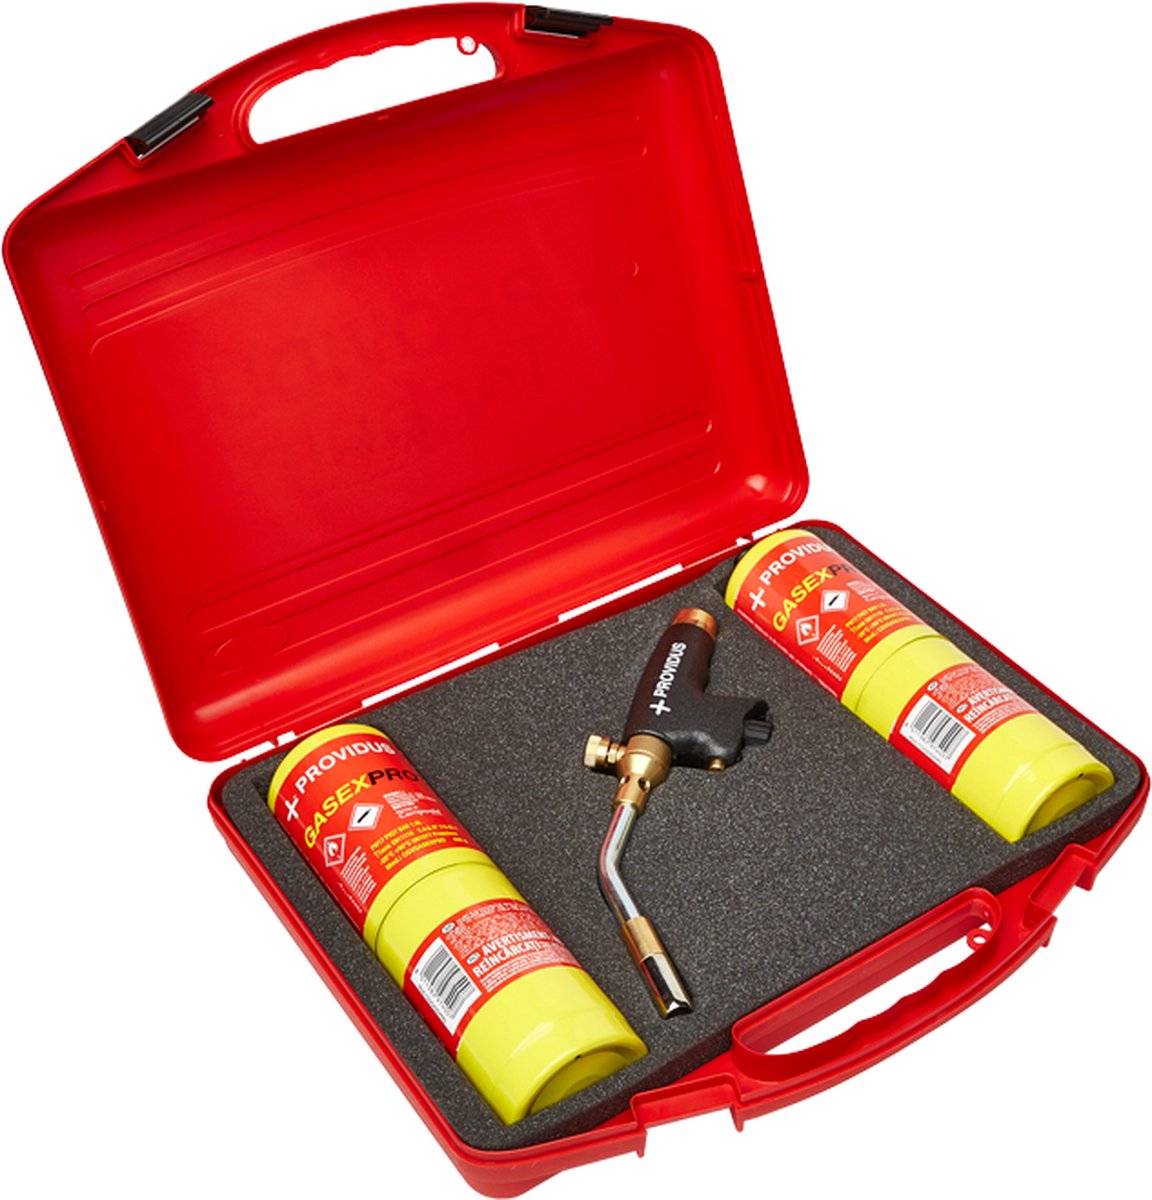 Providus handbrander kofferset inclusief hardsoldeerbrander en 2 wegwerpcilinders - solderen / heetstoken / krimpen - Extra hete vlam door speciaal gas